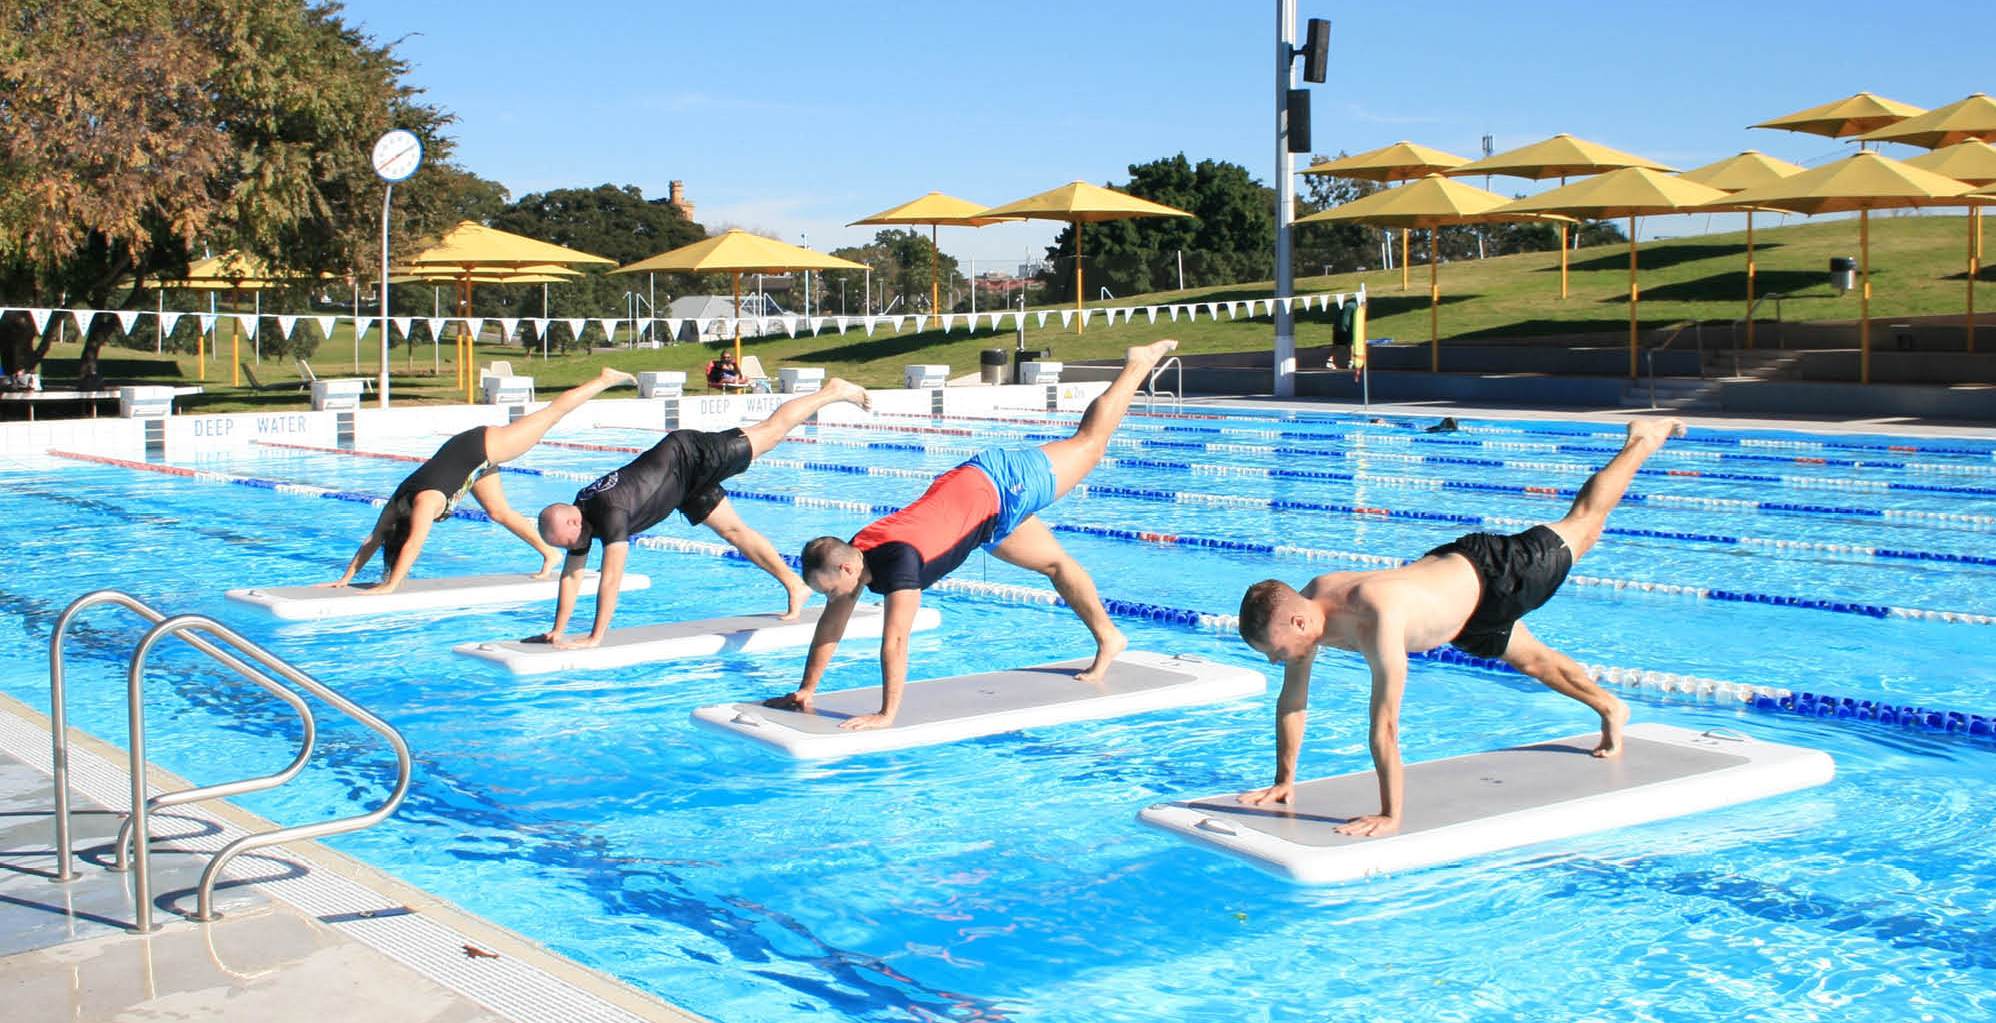 Pool exercises